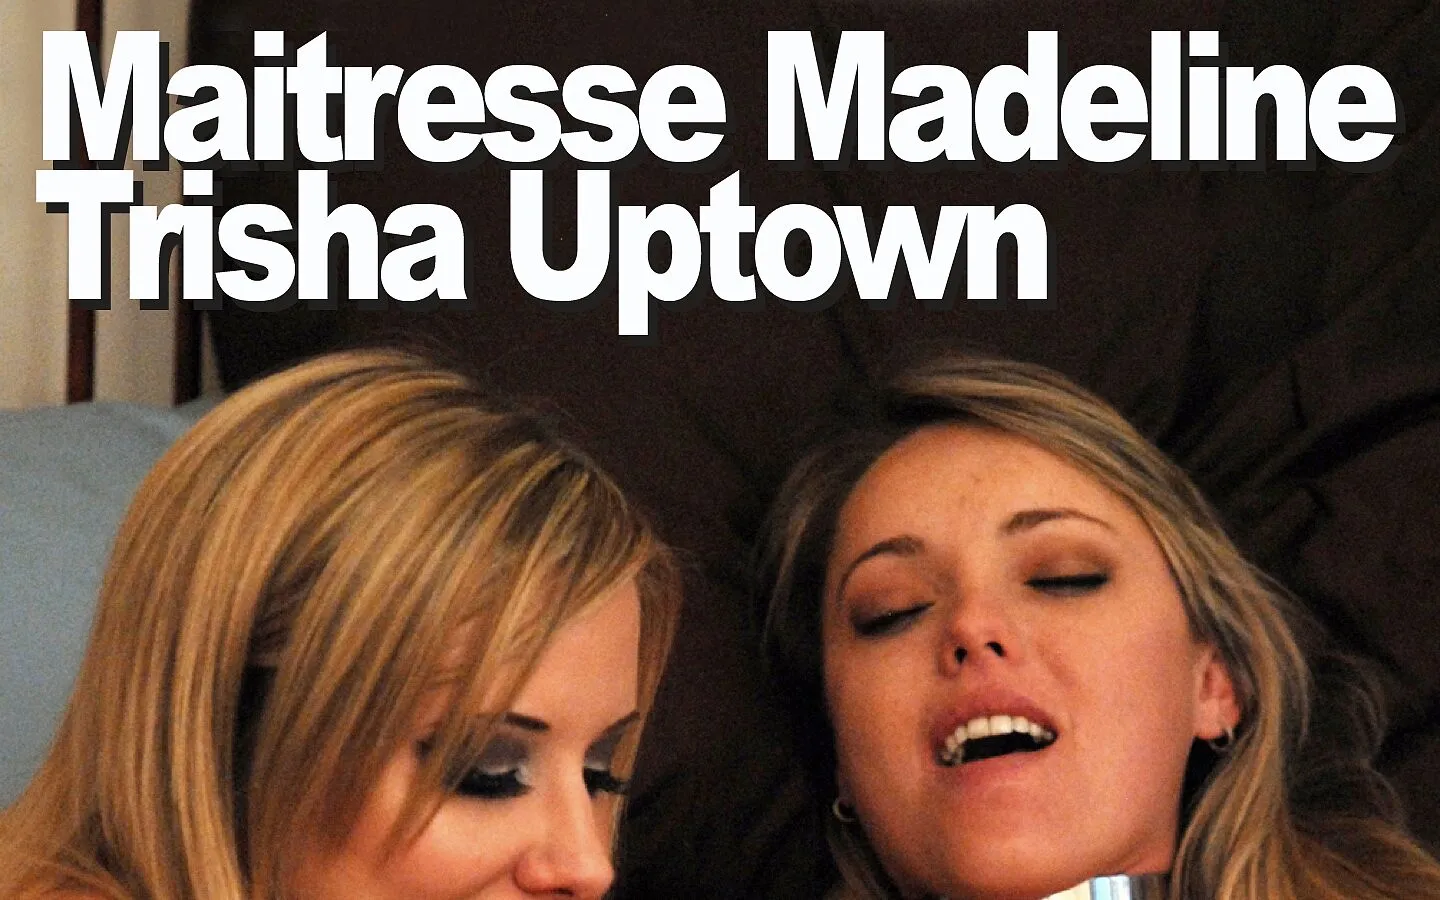 Maitresse Madeline & Trisha Uptown Femdom Femsub Dildo Pink Climax by  Picticon bondage and fetish | Faphouse